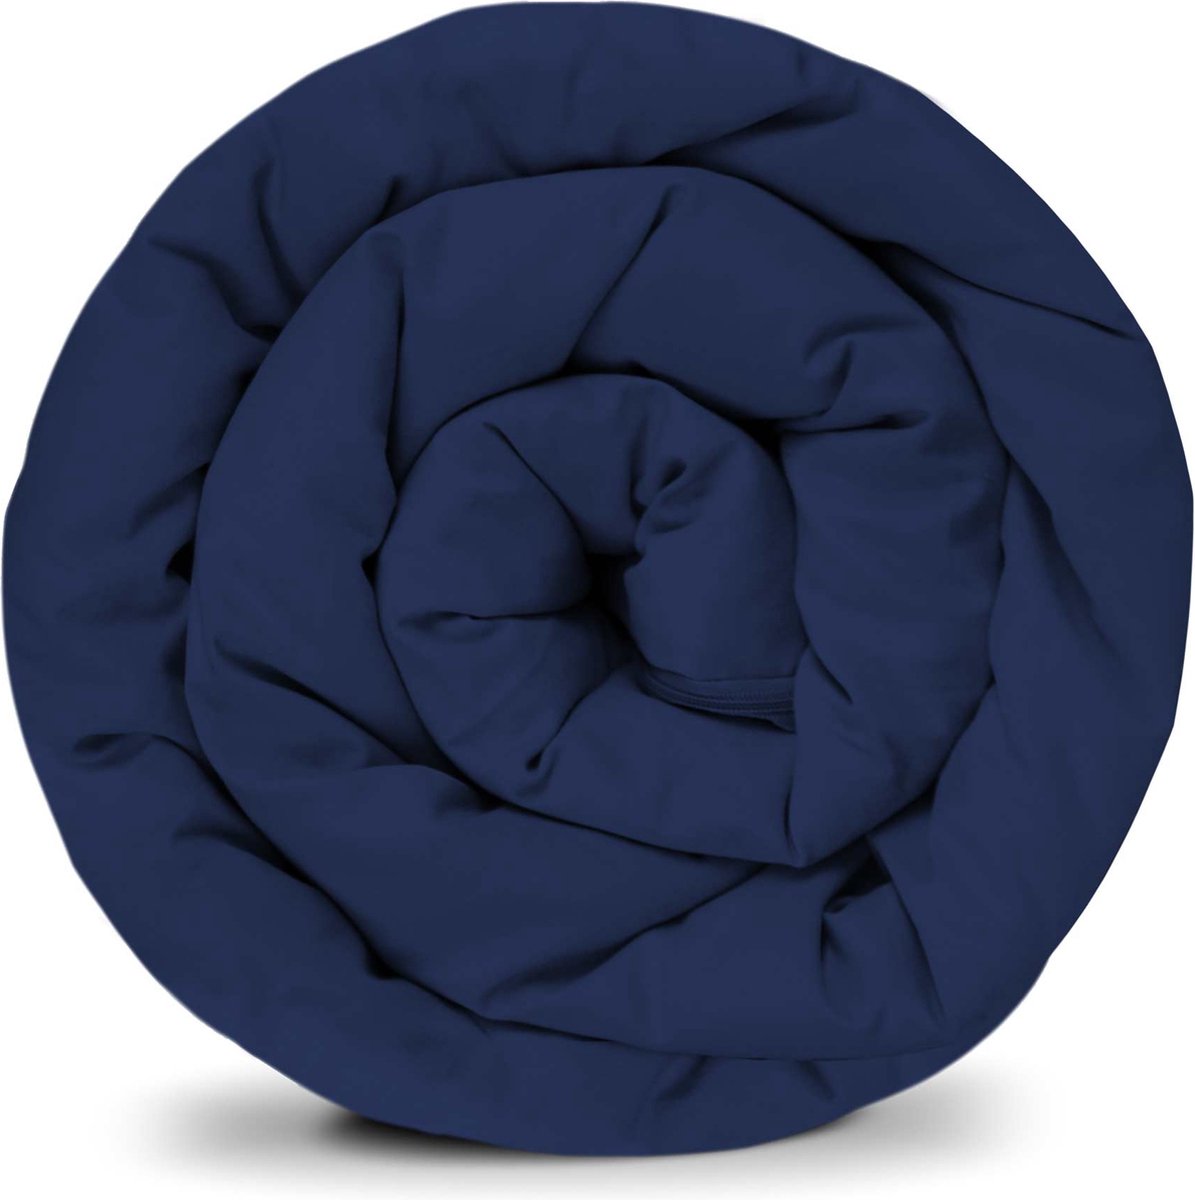 BALANCE verzwaarde dekenhoes in donkerblauw katoen ritssysteem zomerhoes voor volwassenen/tieners voor een betere slaap afmeting: 150x220 cm